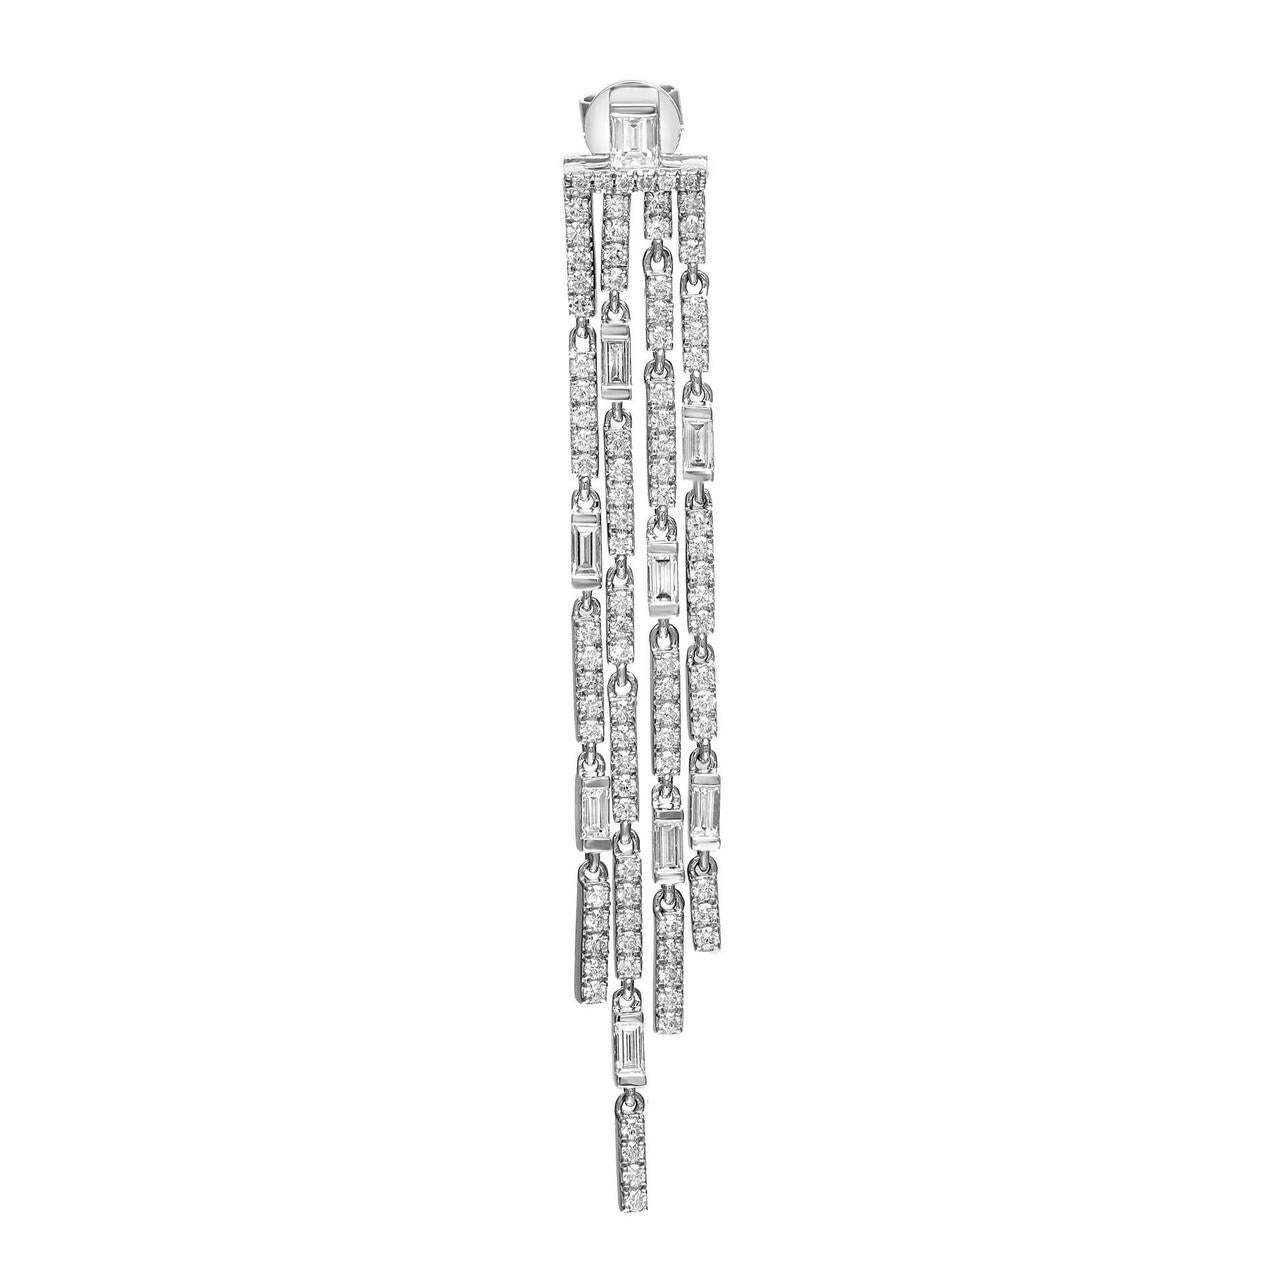 Die 4-Tropfen-Diamant-Kronleuchter-Ohrringe sind mit einer faszinierenden Kombination aus Baguette- und Rundschliff-Diamanten geschmückt. Die Diamanten im Baguetteschliff verleihen dem Design eine schlanke und langgestreckte Form und sorgen für